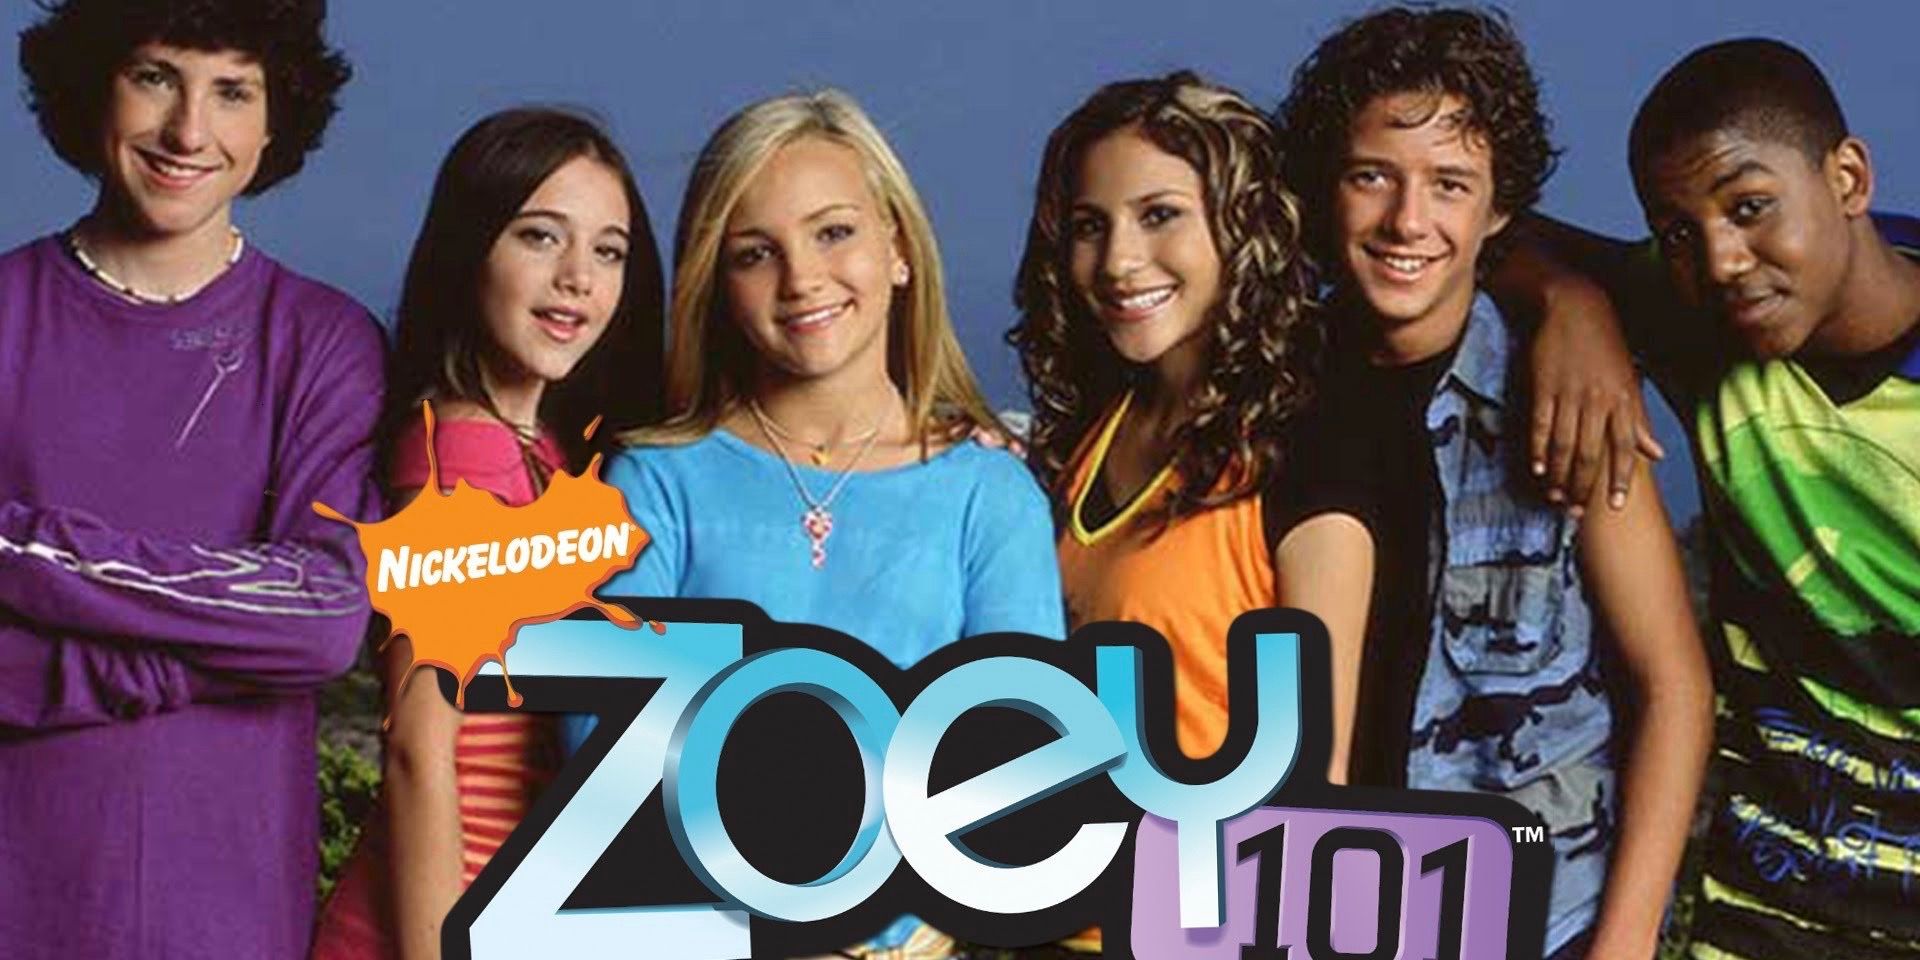 Le casting de Zoey 101 pose à côté du logo de la série